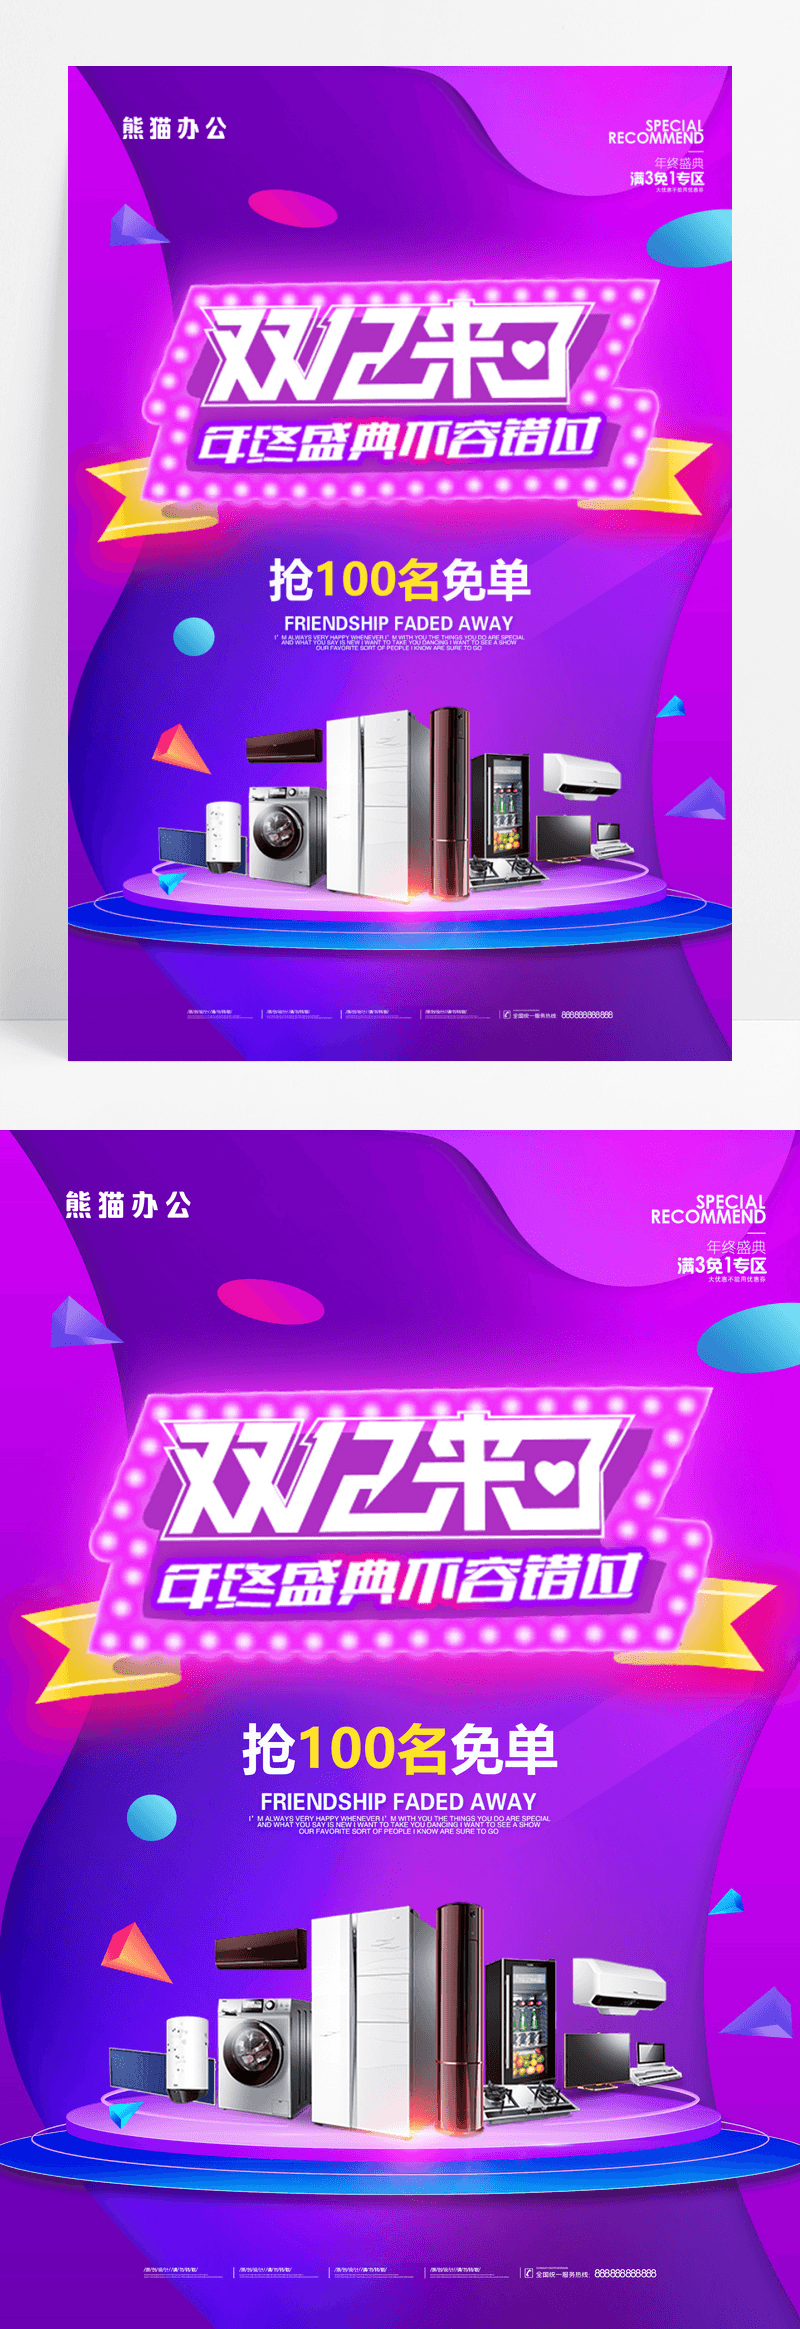 紫色双12年终盛典天猫淘宝电商促销海报